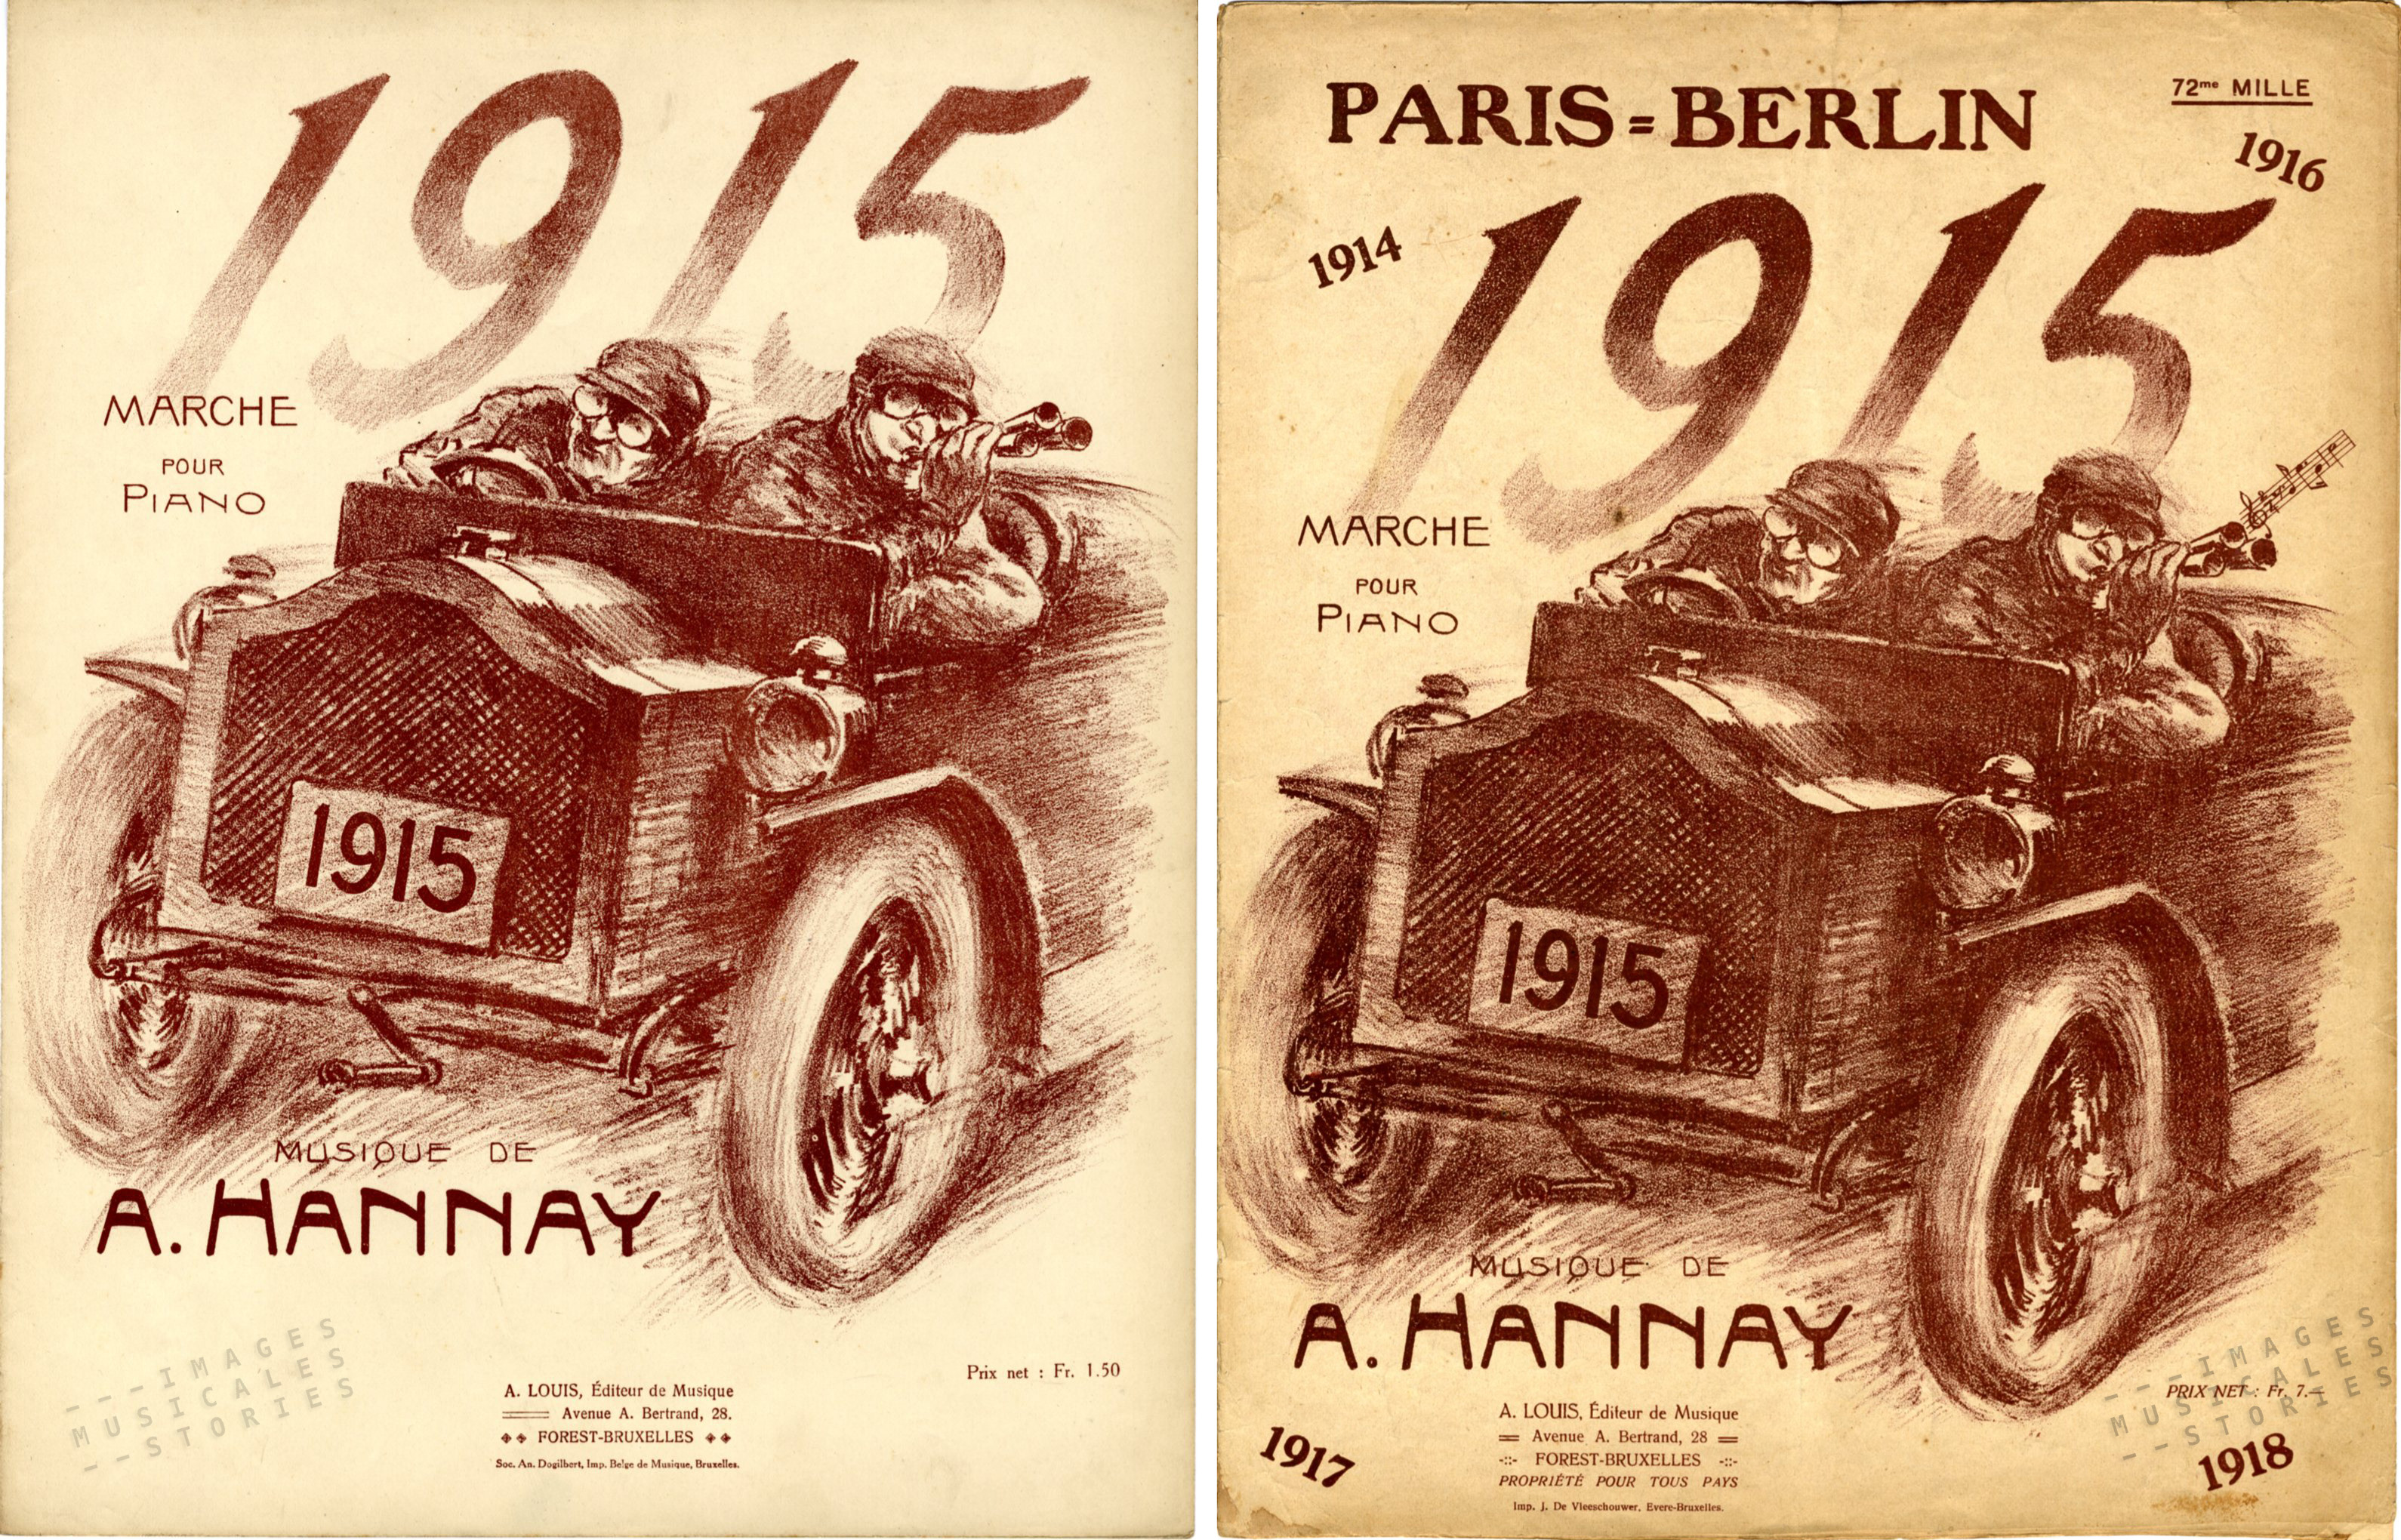 'Paris-Berlin, 1915' sheet music, march by A. Hannay (partition illustrée)